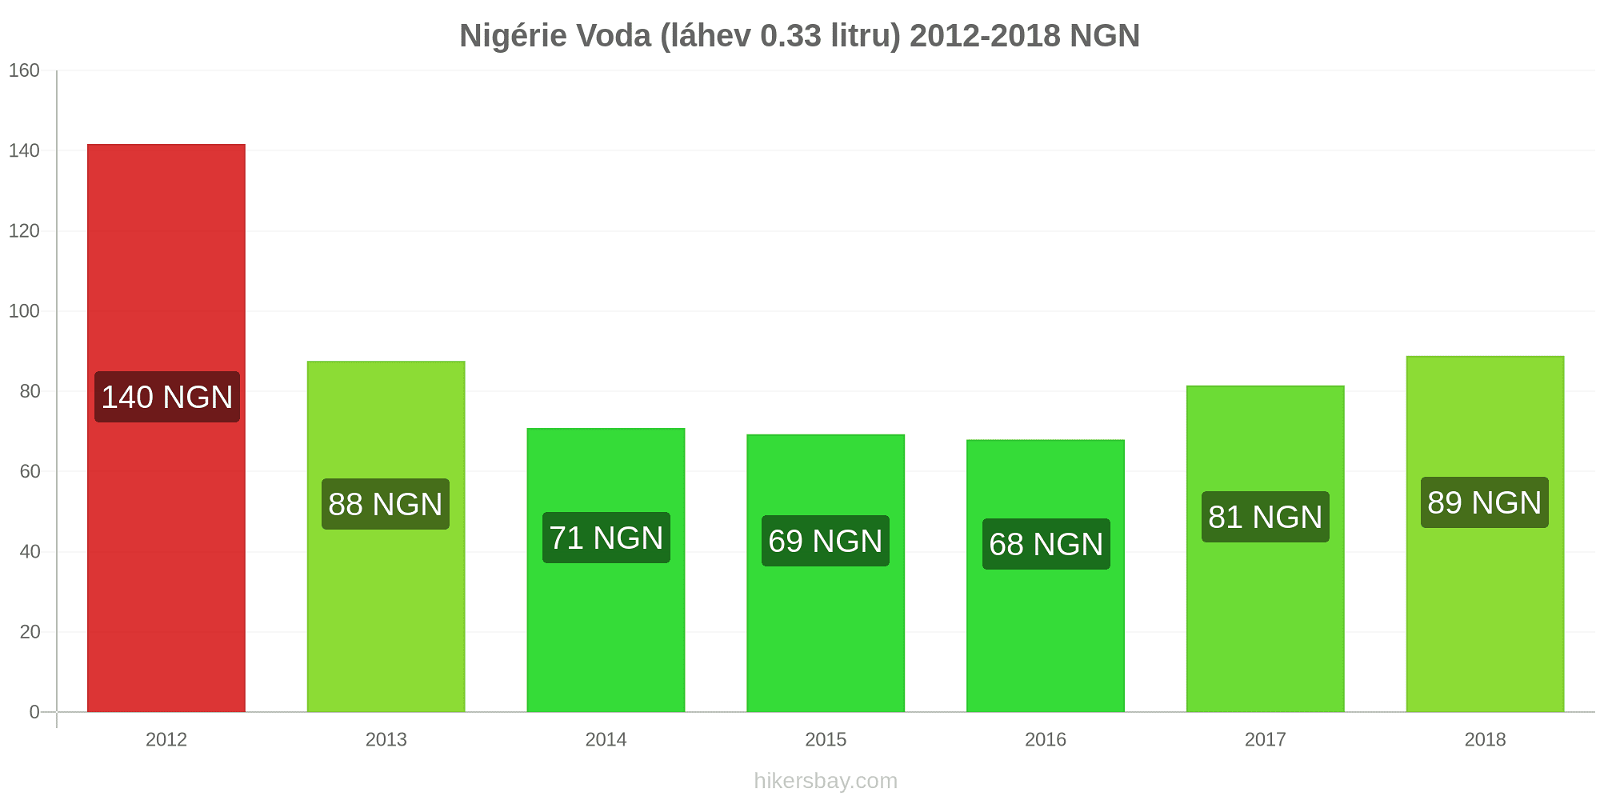 Nigérie změny cen Voda (láhev 0.33 litru) hikersbay.com